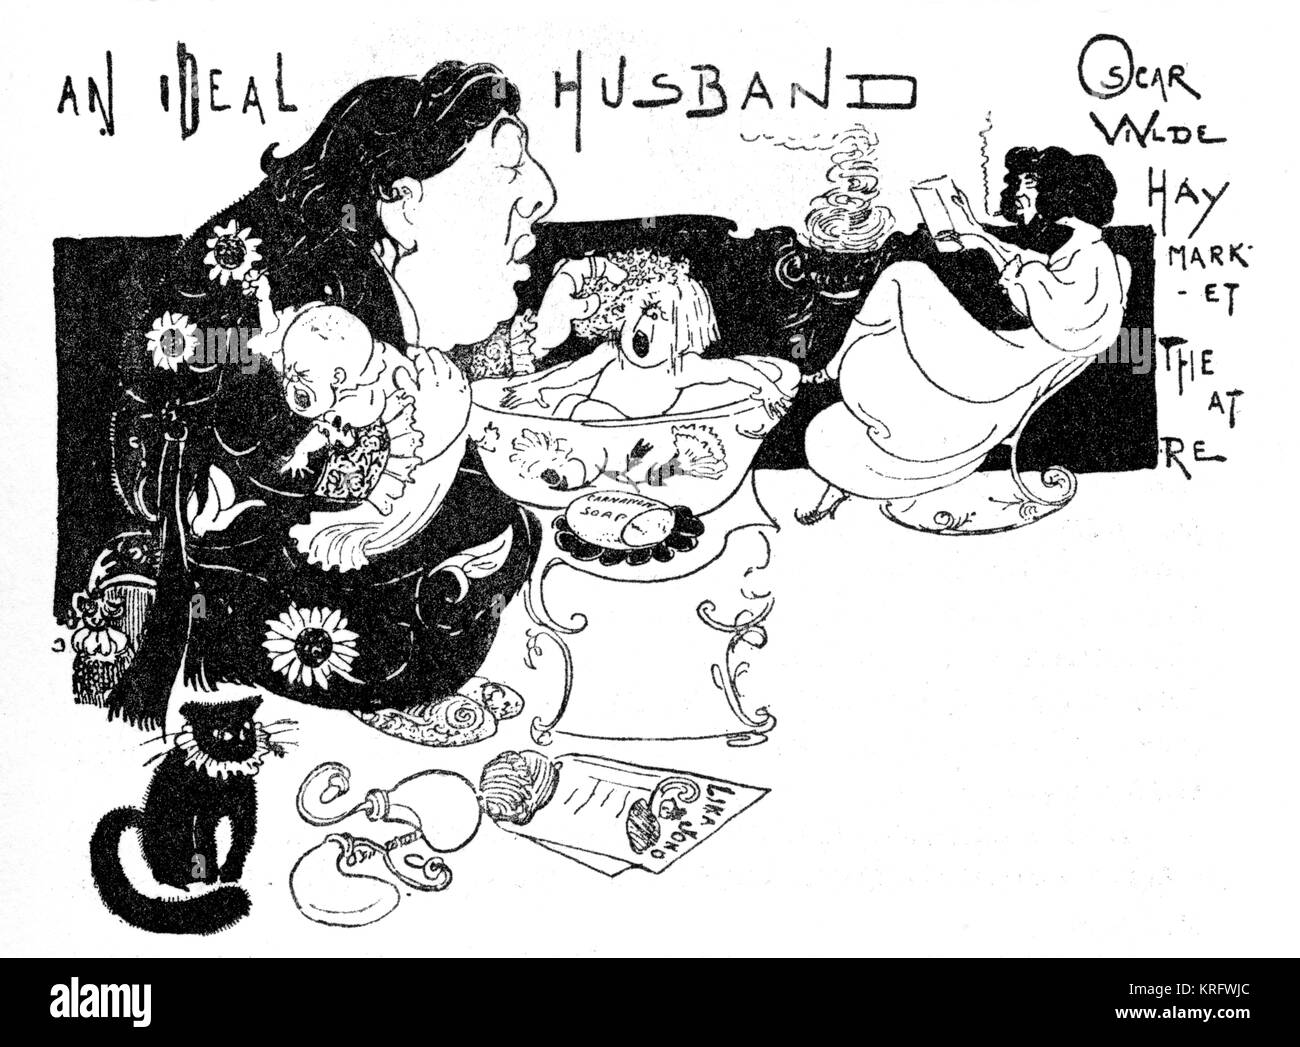 Une caricature de la dramaturge Oscar Wilde, agissant l'une partie de "Un mari idéal" lorsqu'il jouait à l'Haymarket Theatre. Date : 1929 Banque D'Images